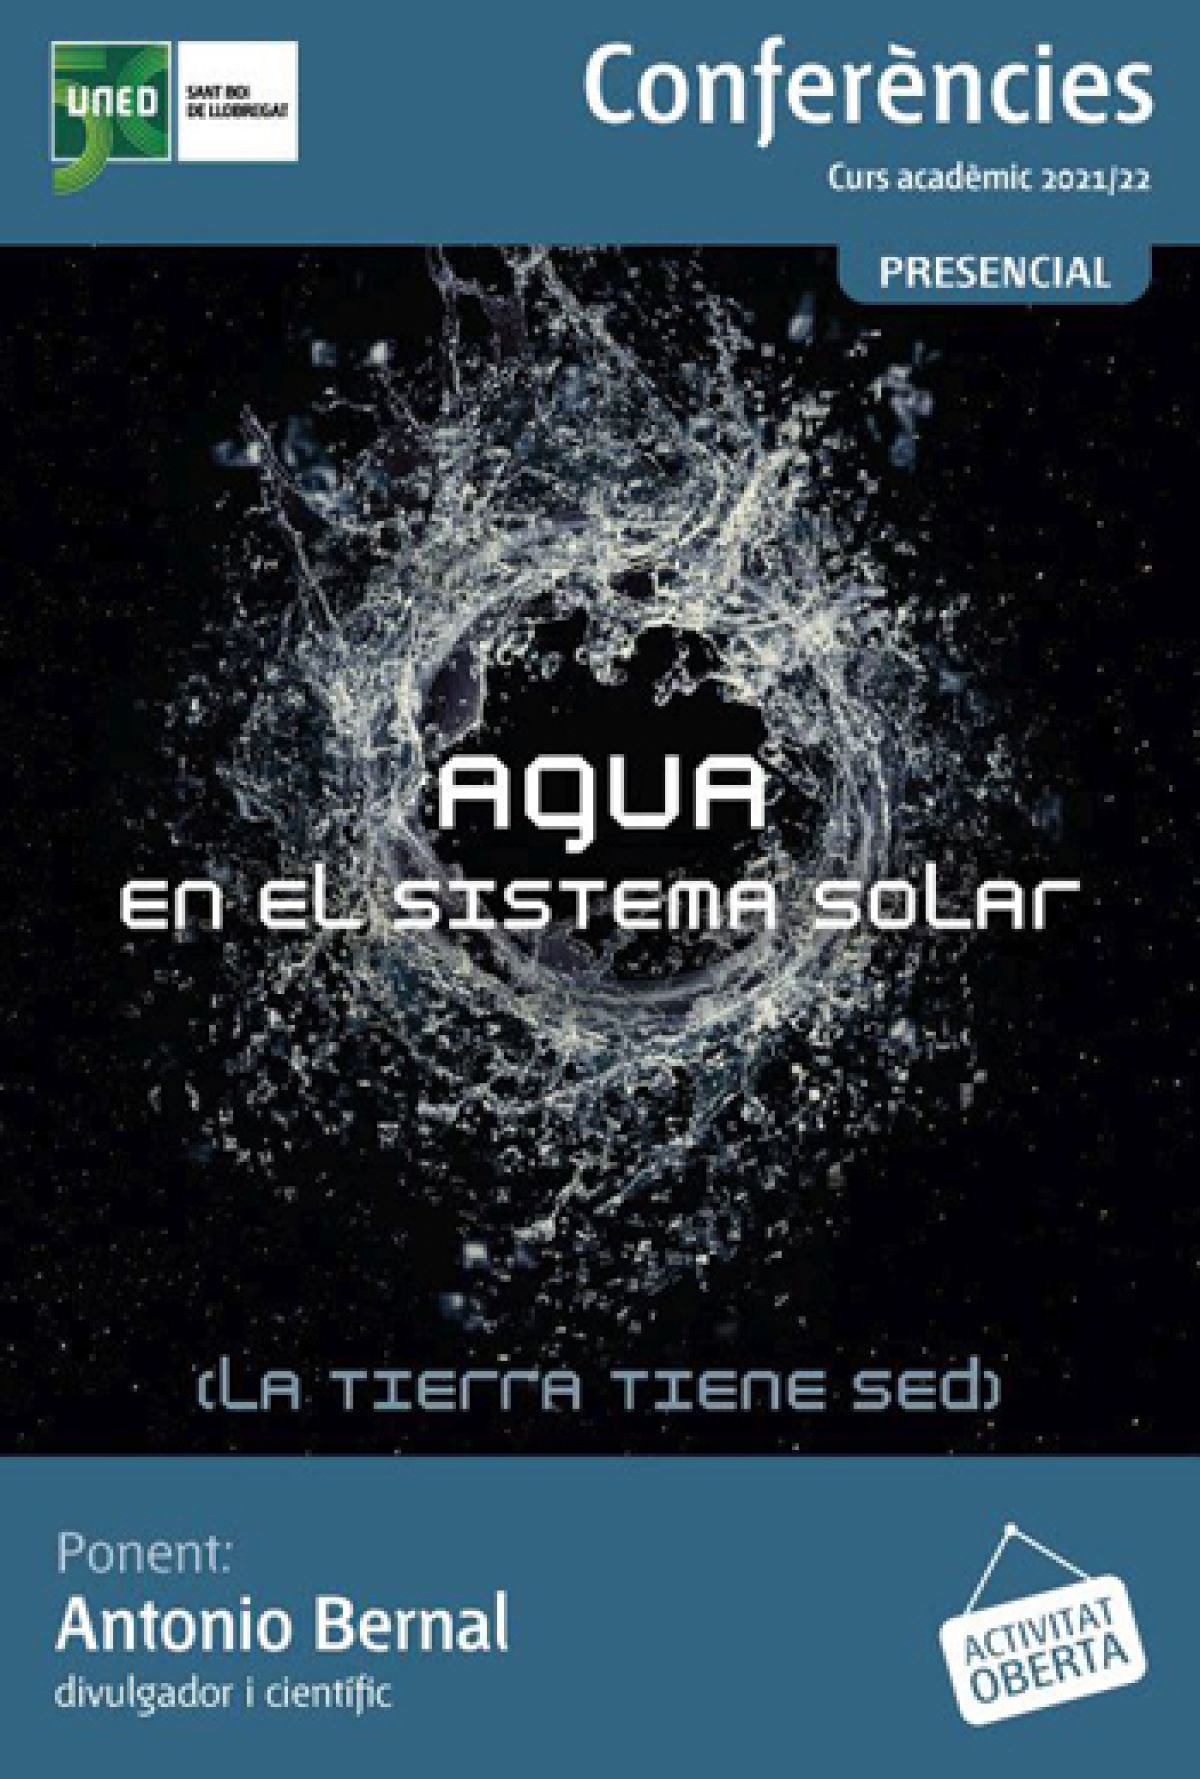 CONFERÈNCIA: "AIGUA EN EL SISTEMA SOLAR" 19 MAIG 2022